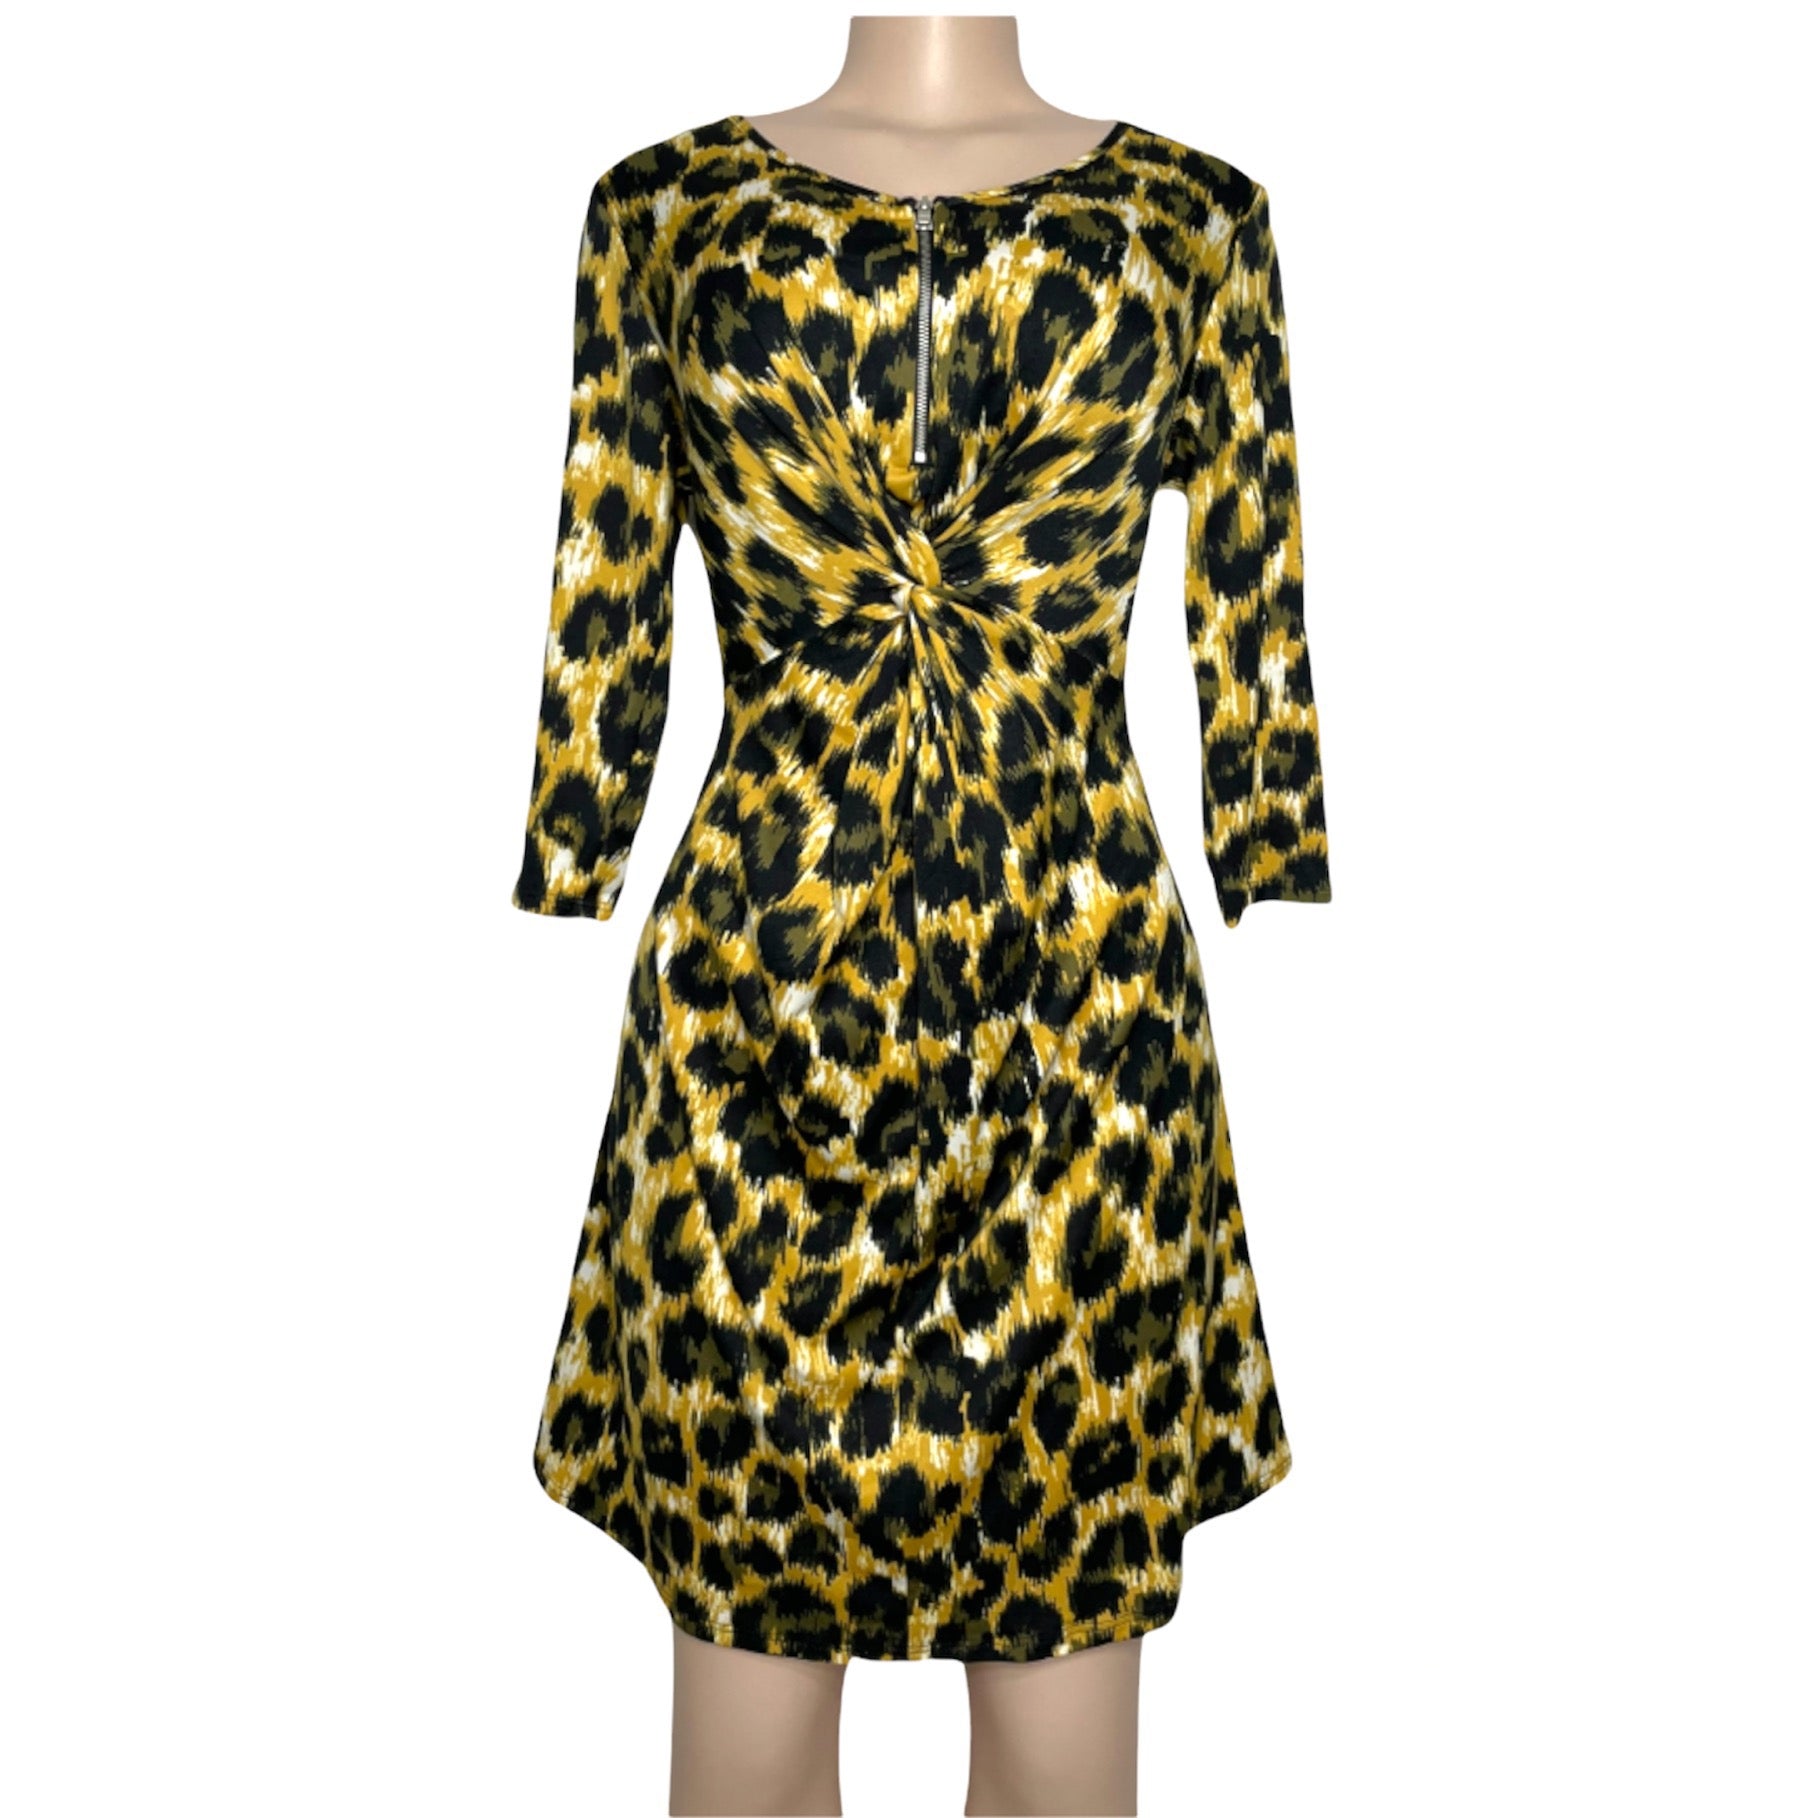 Cheetah NY Collection Dress